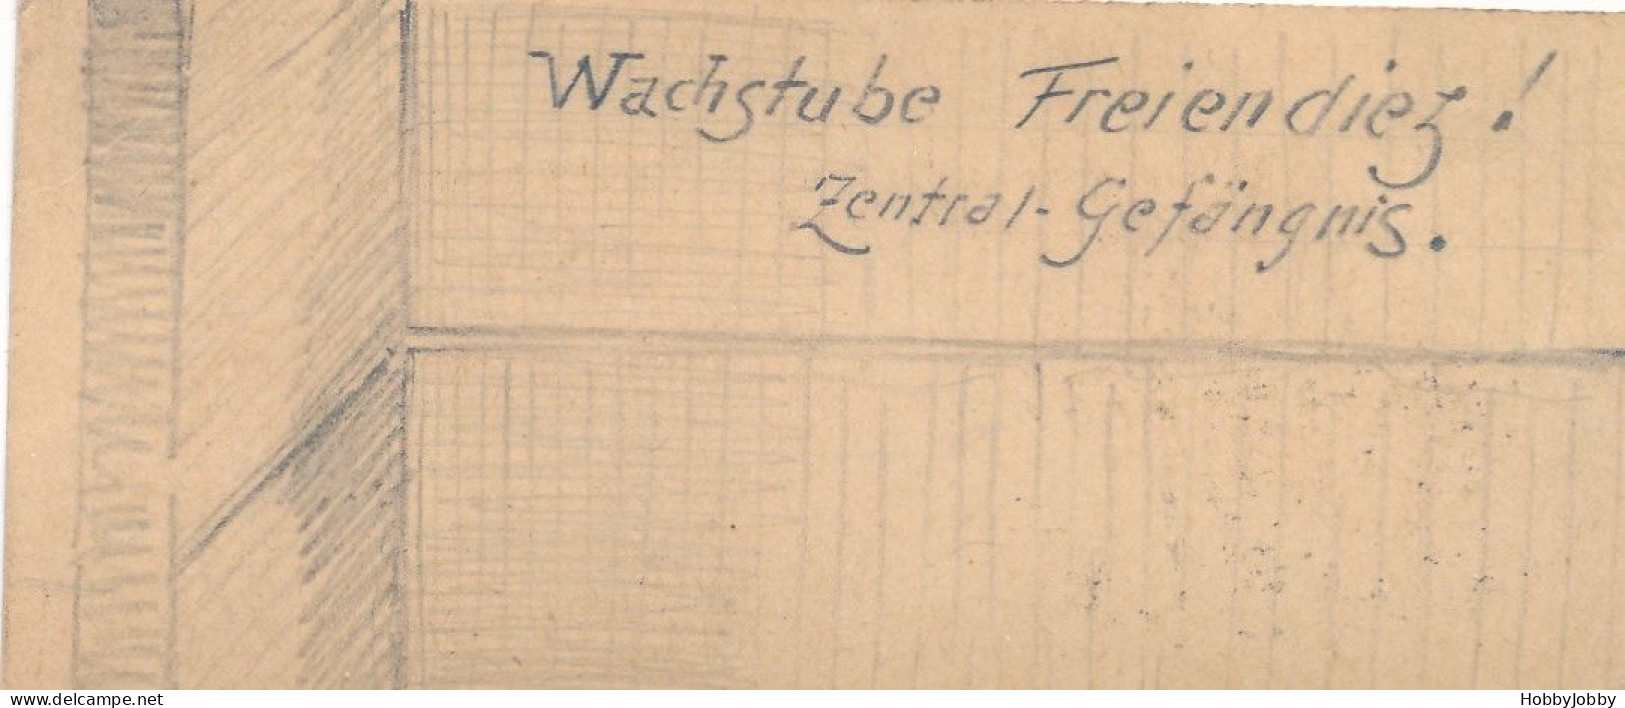 2 Stück I. WK Handgezeichnet-Bleistift:Wach-Stube Kaiser-Wilhelm-Kaserne + Wachstube-Freiendiez! Zentral Gefägnis. - Kazerne